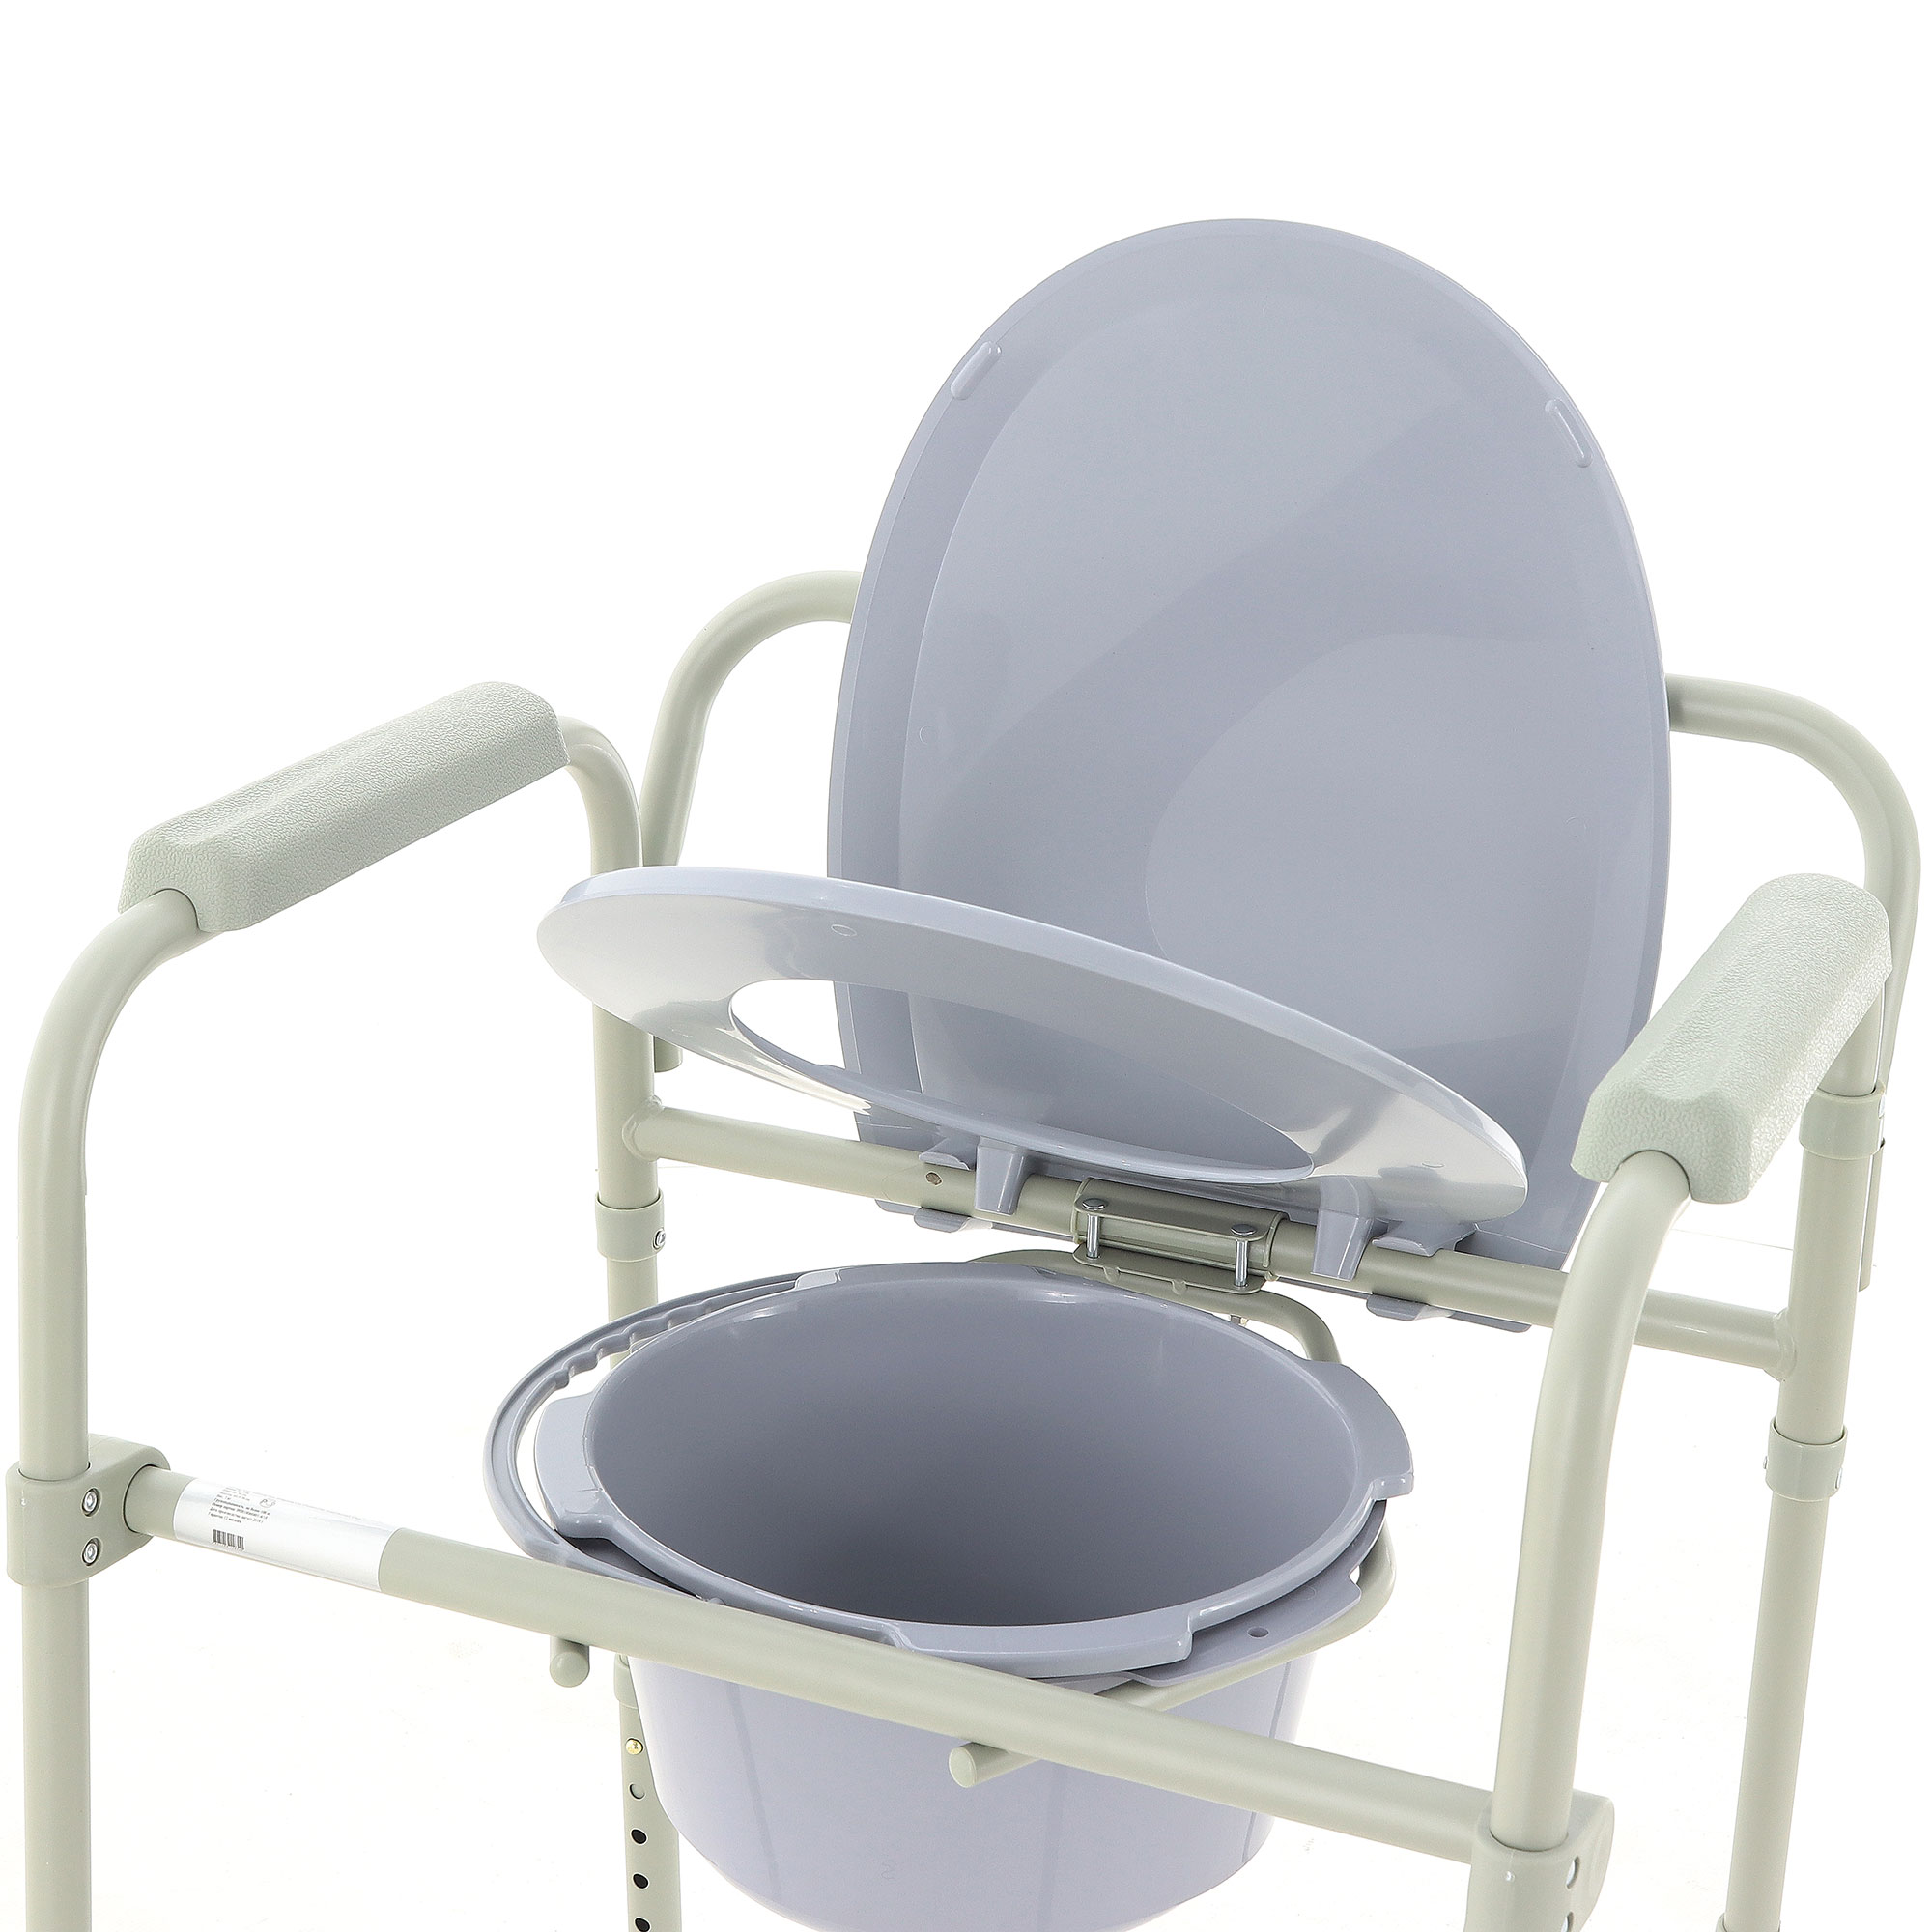 сиденье для санитарного стула